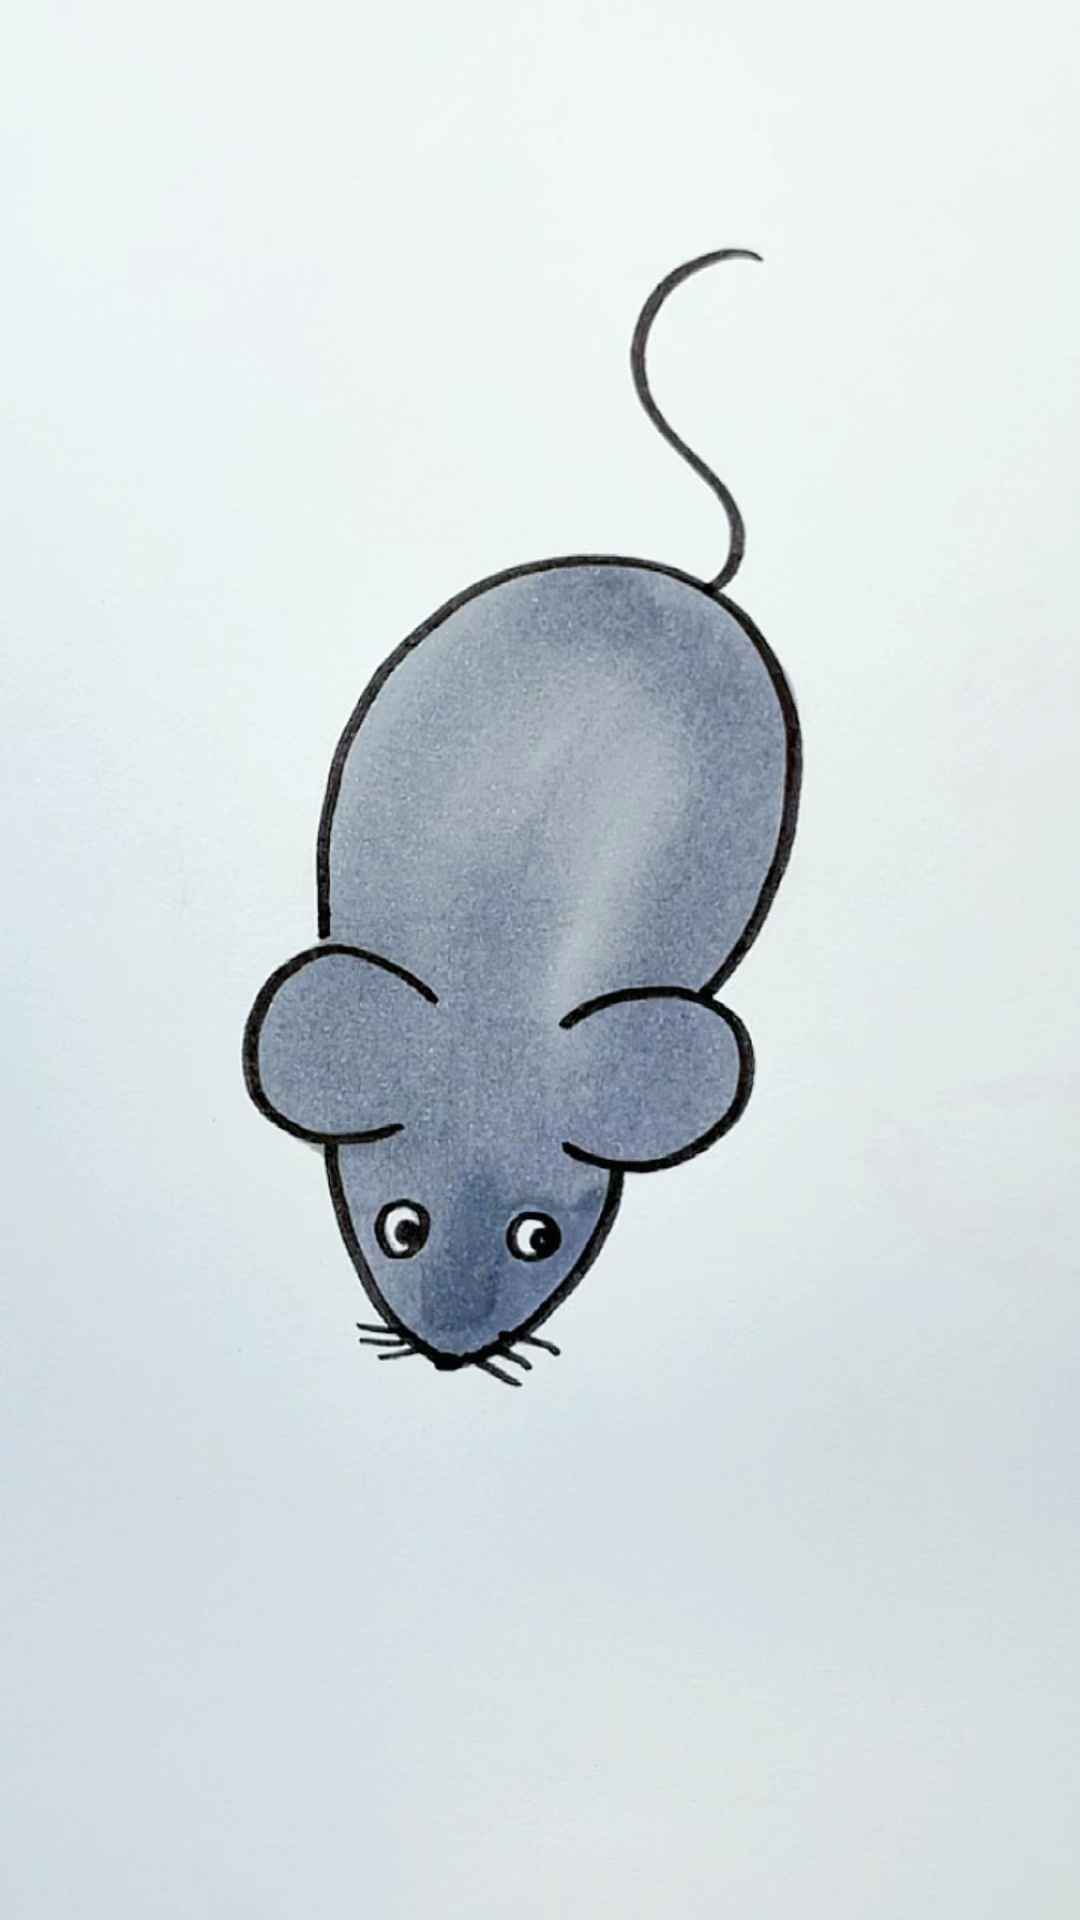 简易老鼠画法图片